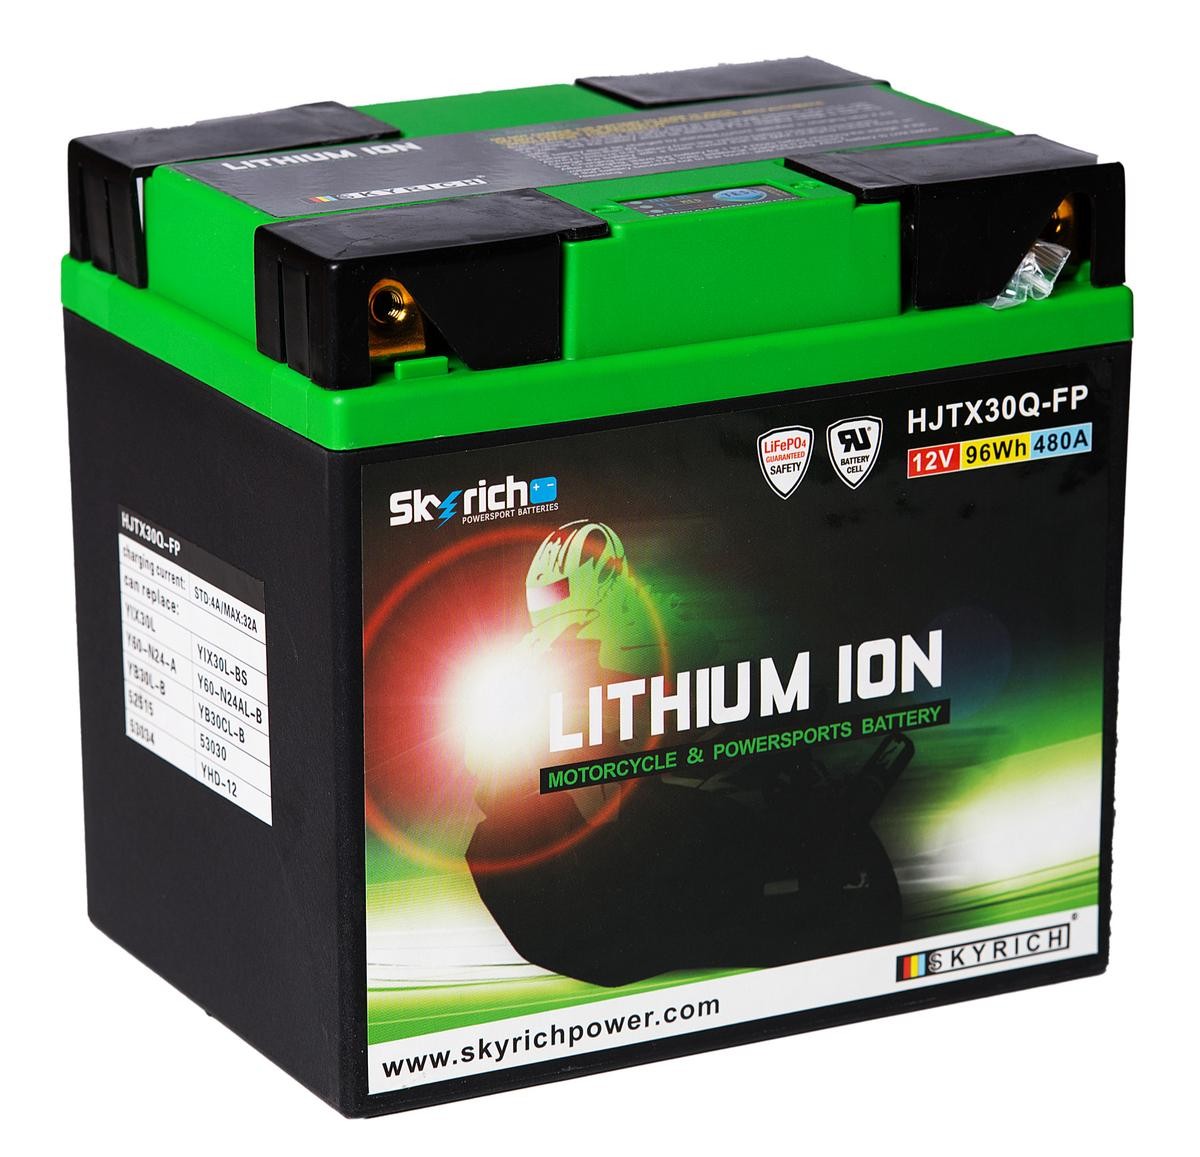 Exide ELT12B Li-Ion Lithium Motorradbatterie 12V 5Ah 260A